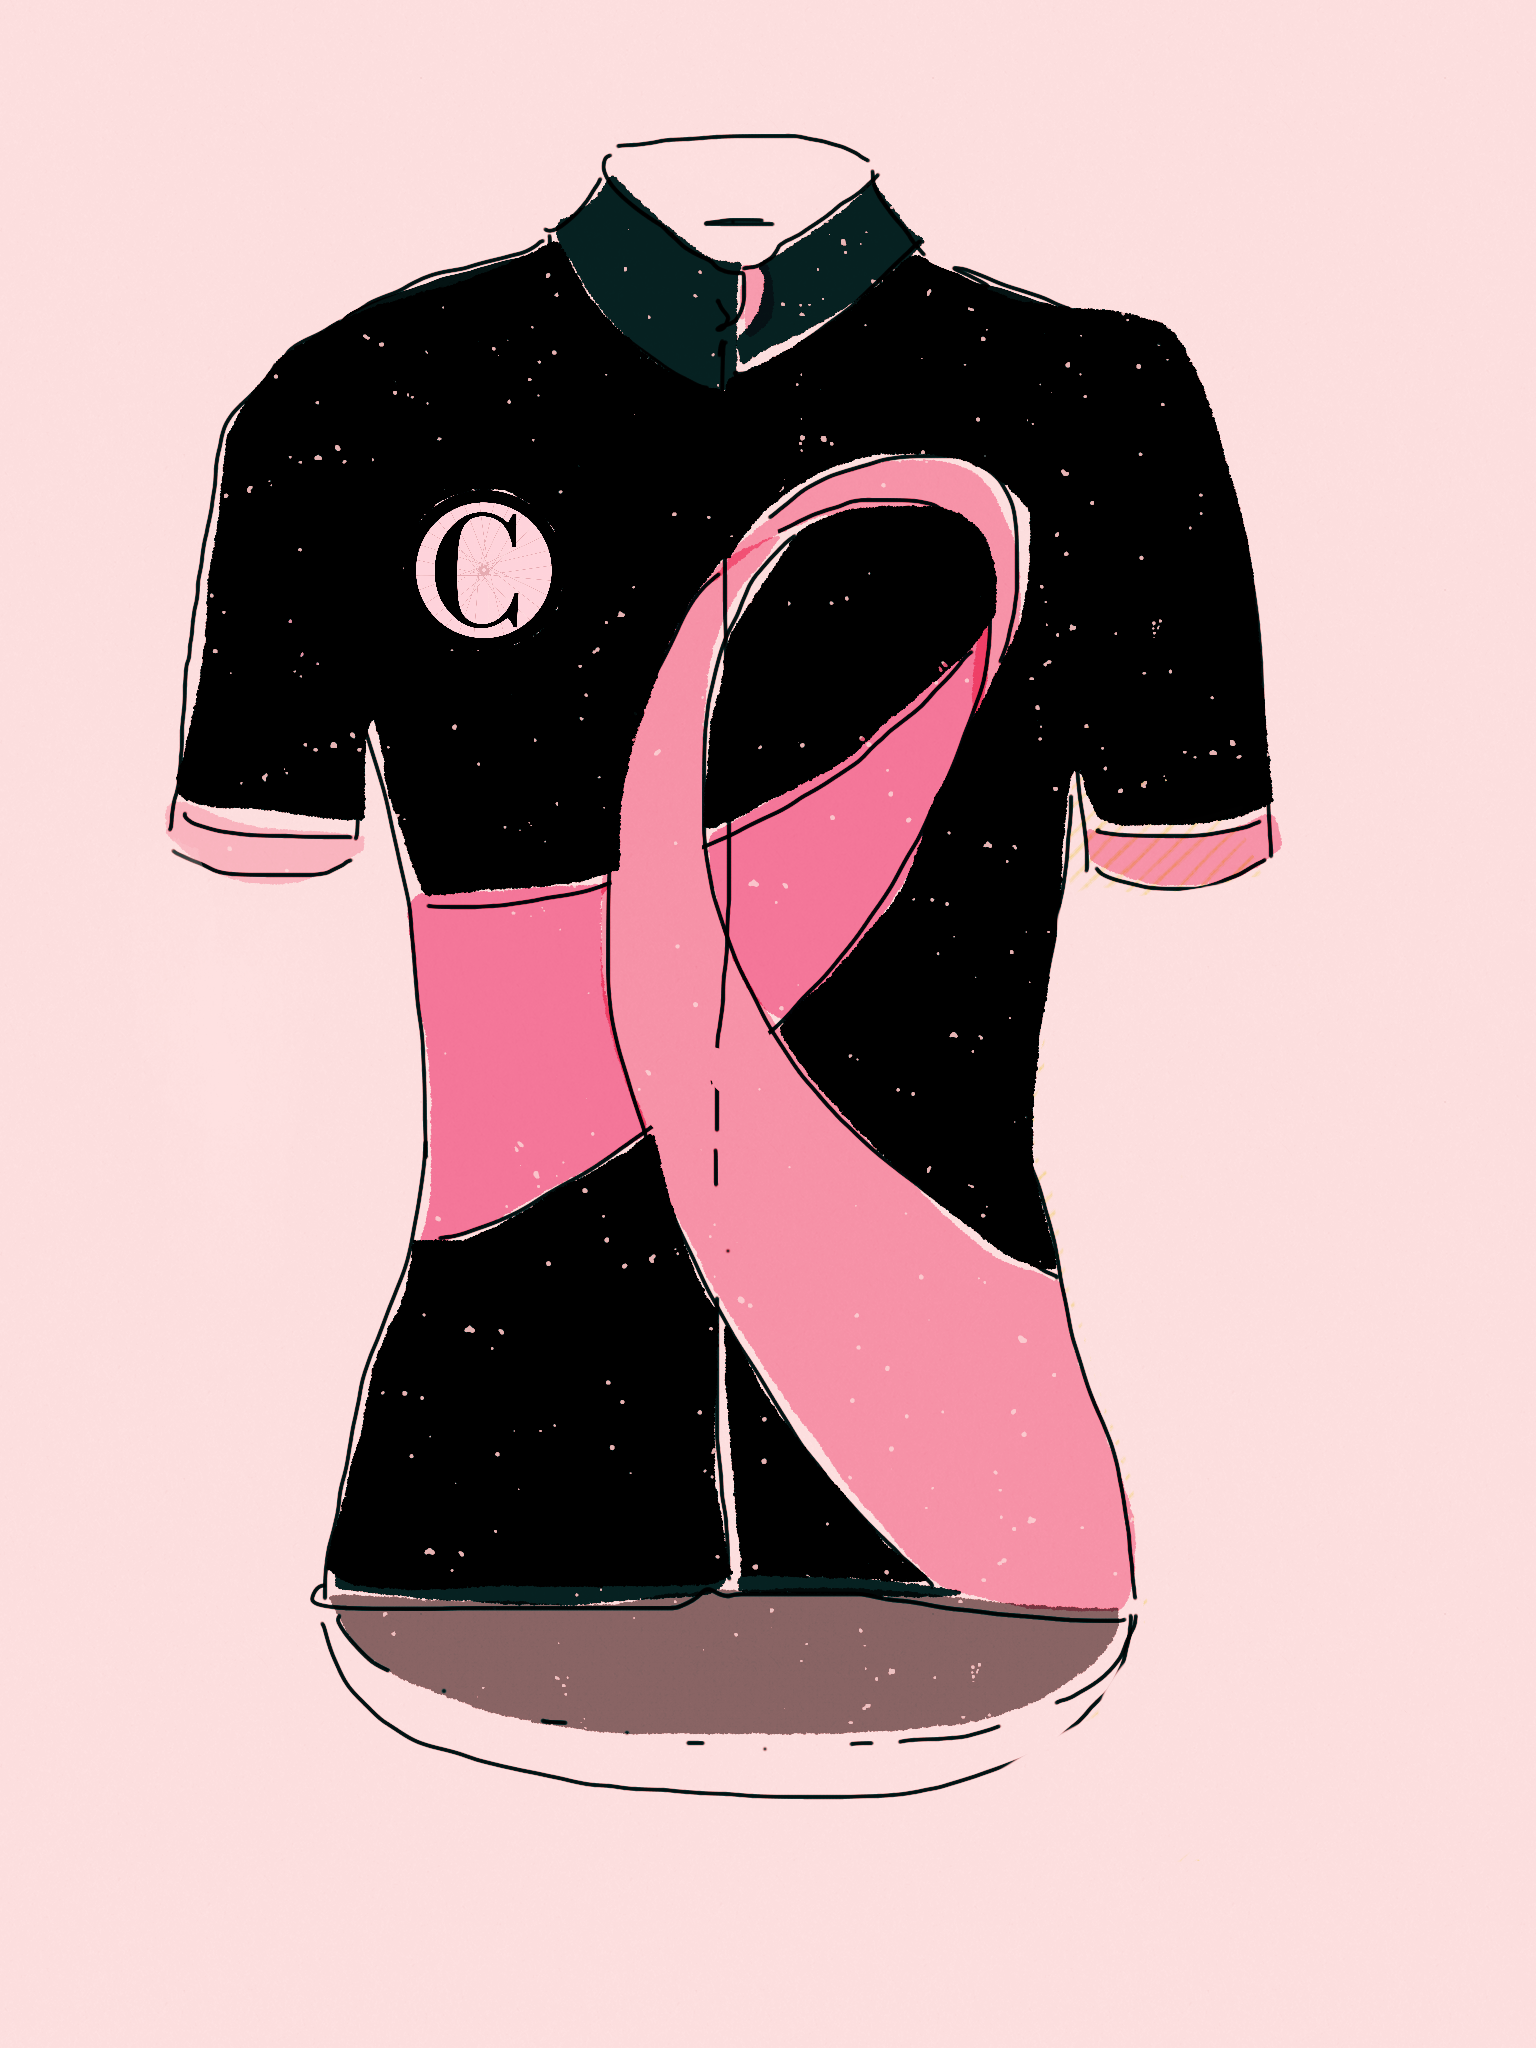 Fuck cancer – heja oss som får cykla i CYKELKATTEN feat. Cykeltjer goes rosa bandet-kit!